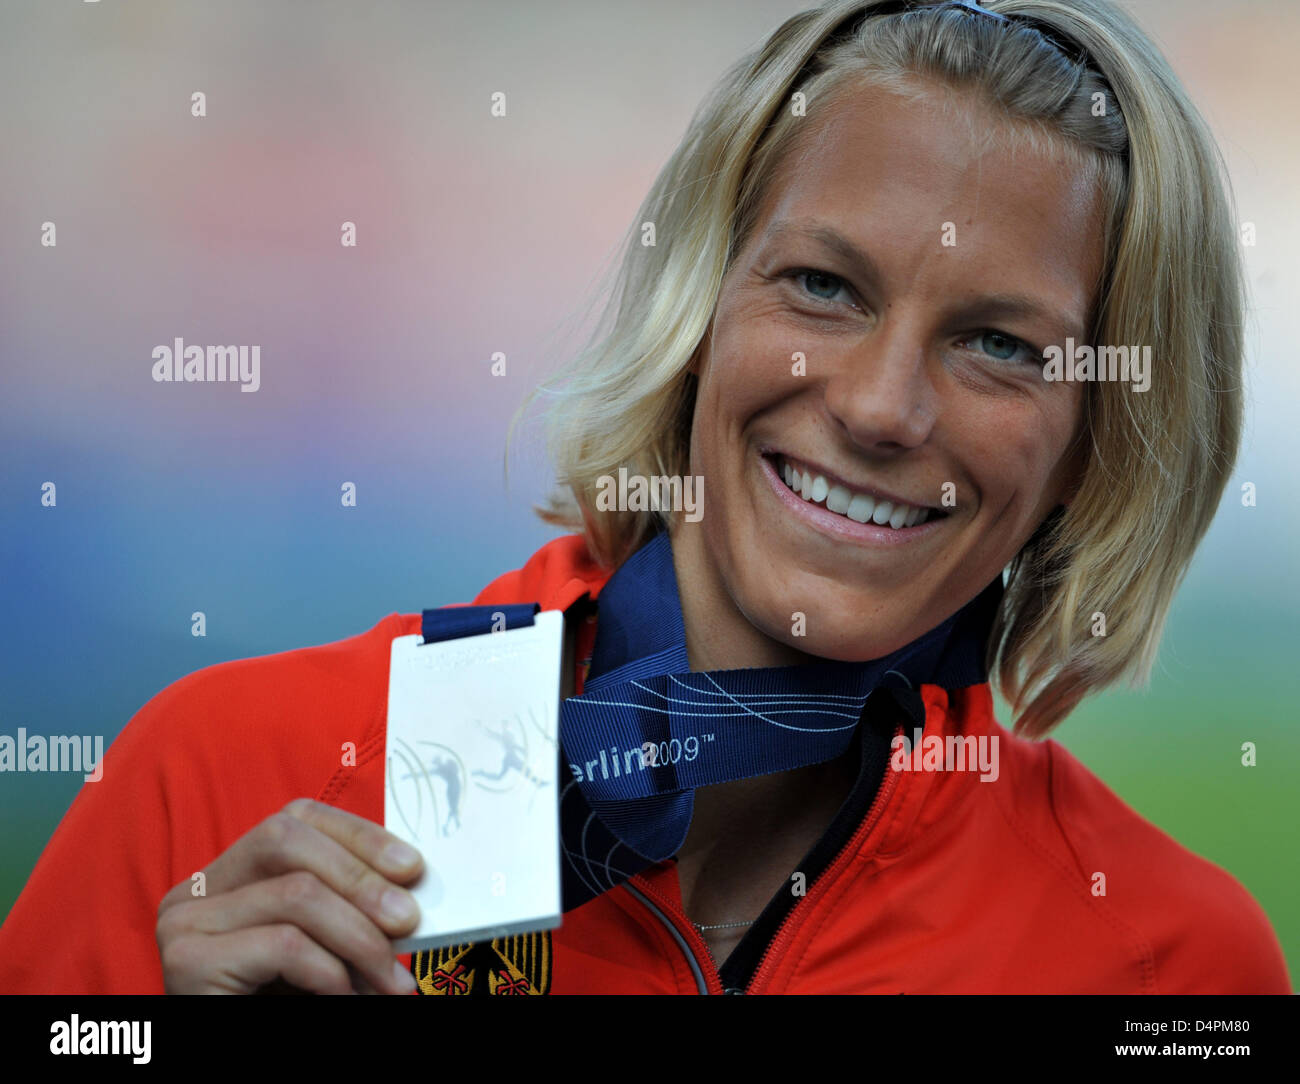 Alemán Jennifer Oeser muestra su medalla de plata durante la ceremonia de entrega de medallas Heptathlon en el XII Campeonato del Mundo IAAF de Atletismo, Berlín, Alemania, el 17 de agosto de 2009. Foto: Bernd Thyssen Foto de stock